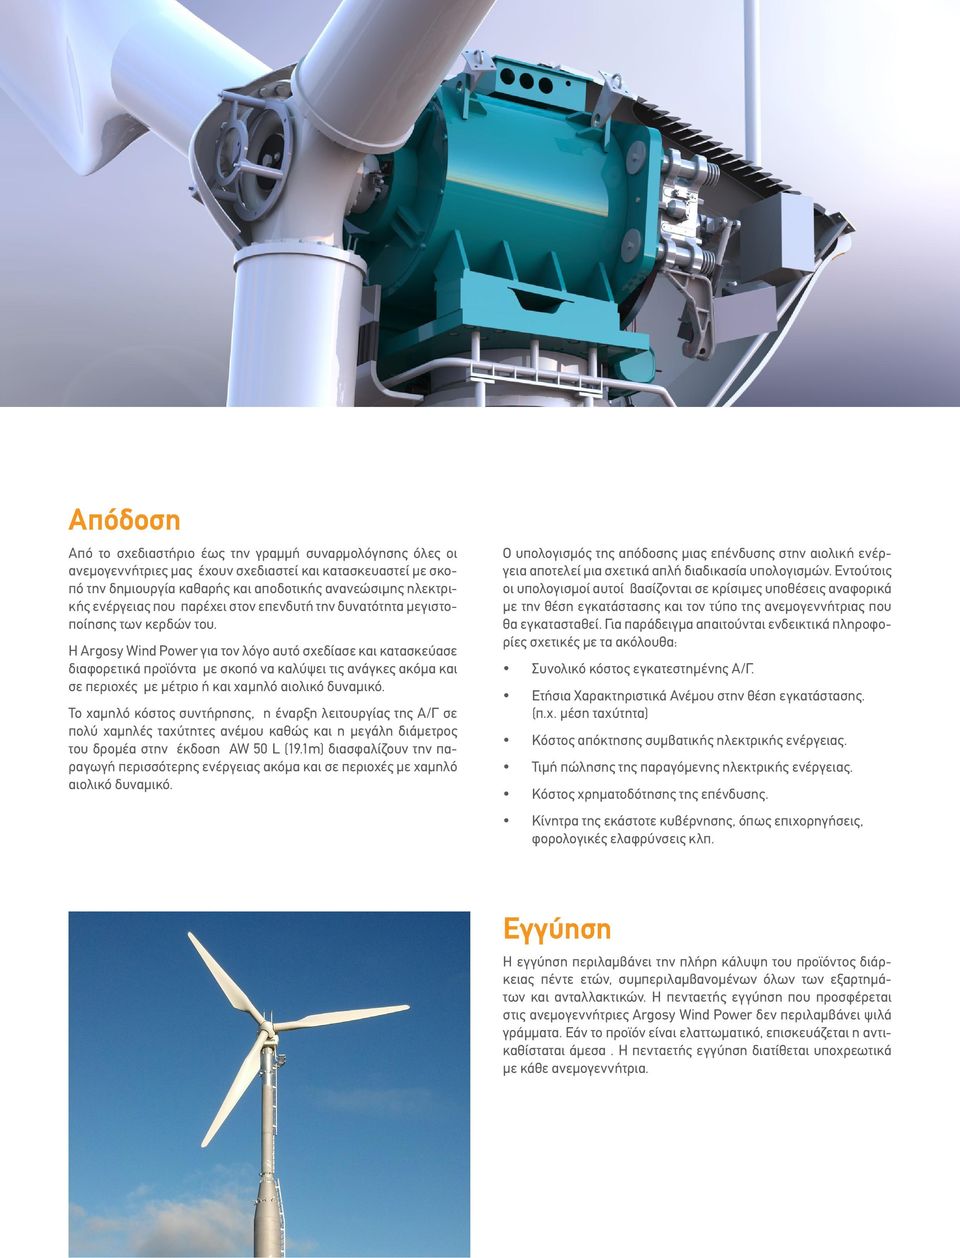 Η Argosy Wind Power για τον λόγο αυτό σχεδίασε και κατασκεύασε διαφορετικά προϊόντα με σκοπό να καλύψει τις ανάγκες ακόμα και σε περιοχές με μέτριο ή και χαμηλό αιολικό δυναμικό.